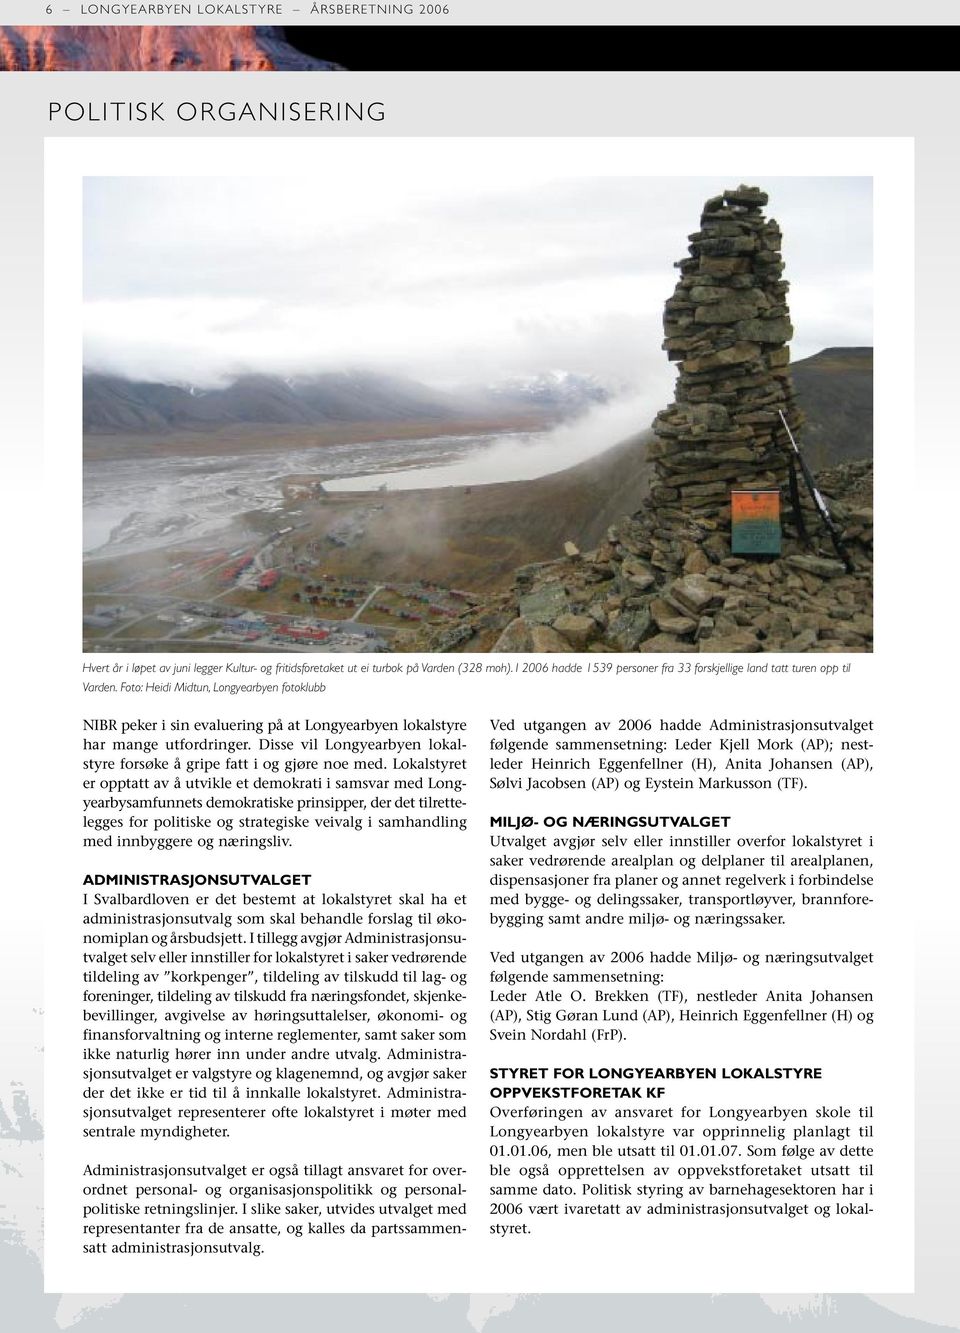 Foto: Heidi Midtun, Longyearbyen fotoklubb NIBR peker i sin evaluering på at Longyearbyen lokalstyre har mange utfordringer. Disse vil Longyearbyen lokalstyre forsøke å gripe fatt i og gjøre noe med.